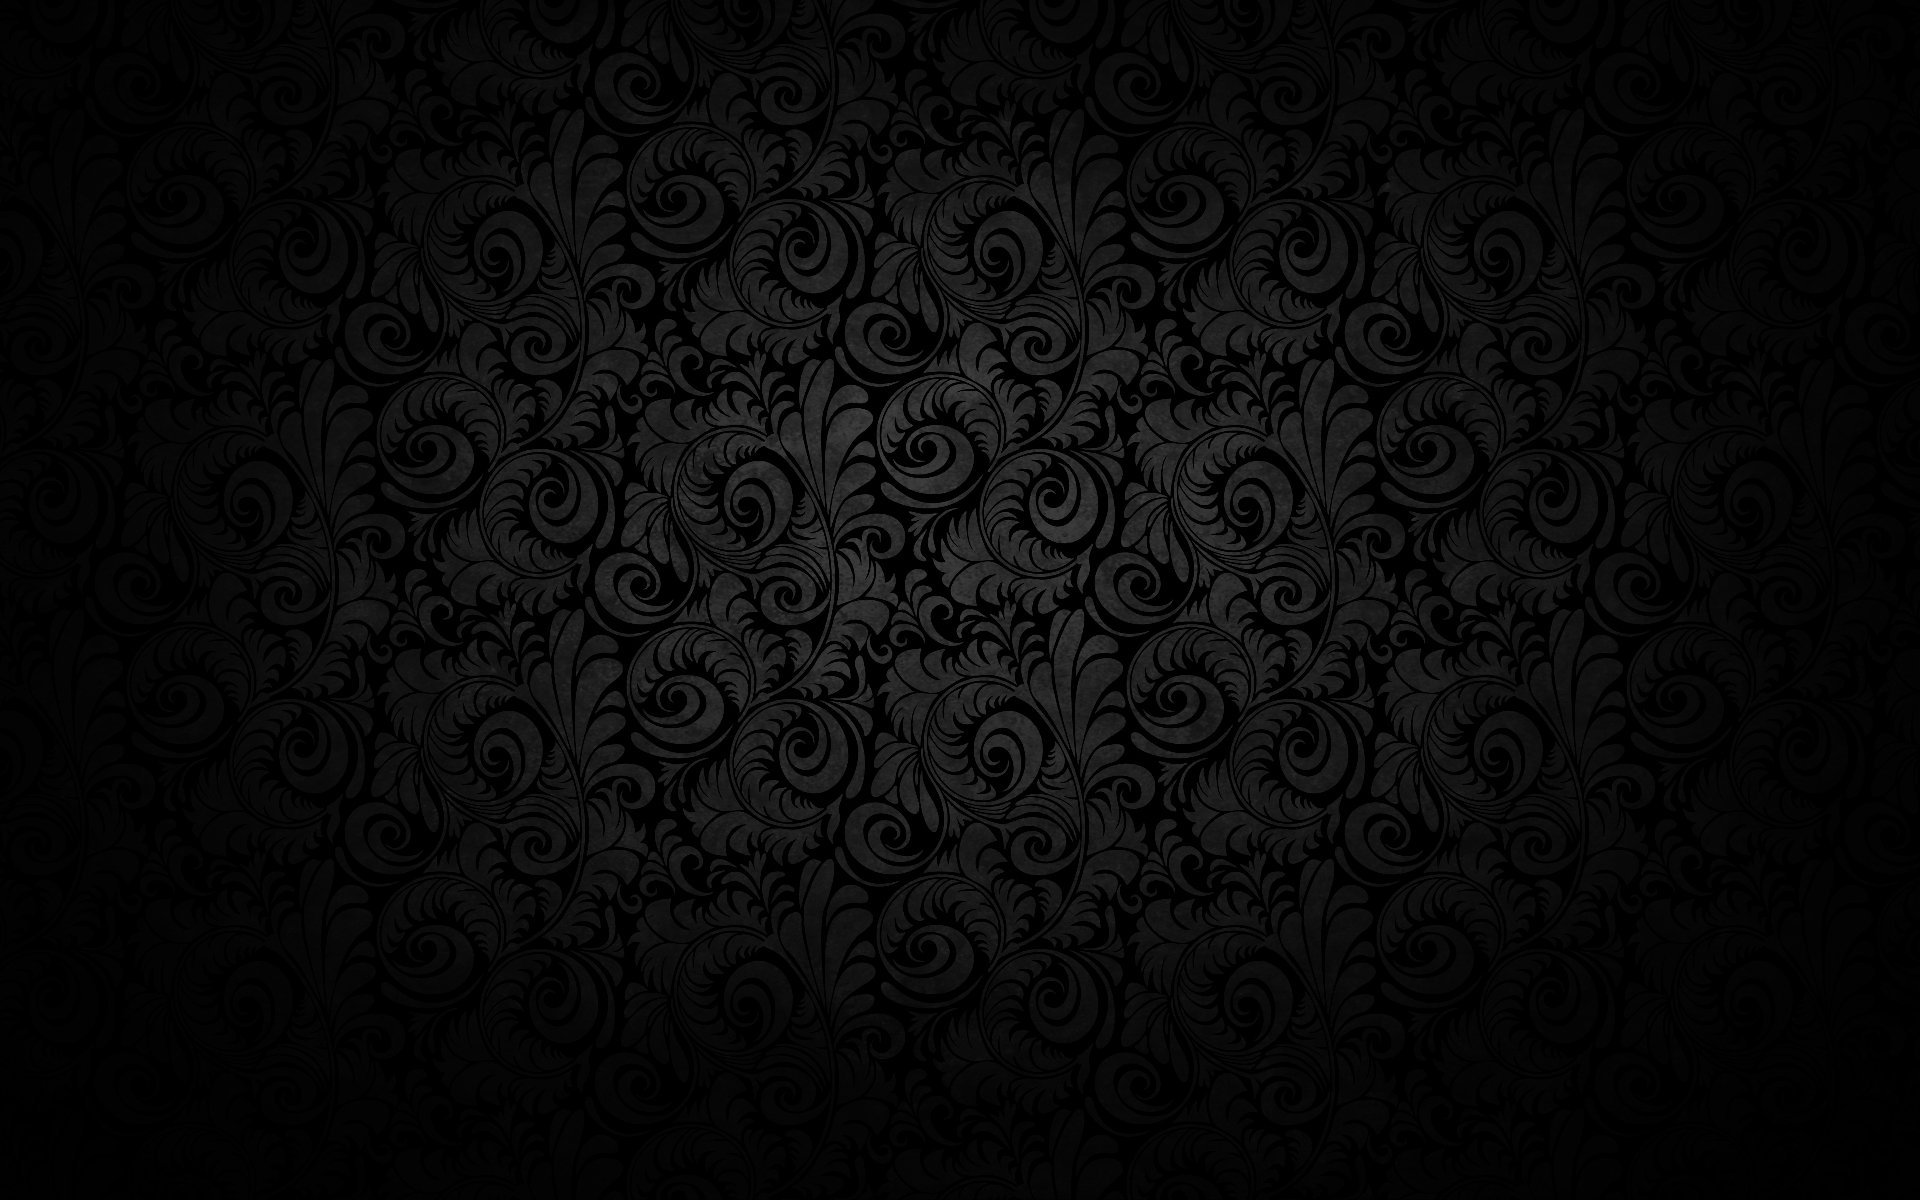 Hình nền đen cổ điển: Bạn muốn tìm kiếm phong cách độc đáo và cổ điển? Hình nền đen cổ điển sẽ đưa bạn đến một không gian vừa độc đáo và cũ kỹ. Với các chi tiết trang trí cổ điển nổi bật, cho phép bạn có những trải nghiệm về khung cảnh cổ điển mà không cần tới một địa điểm nào khác.